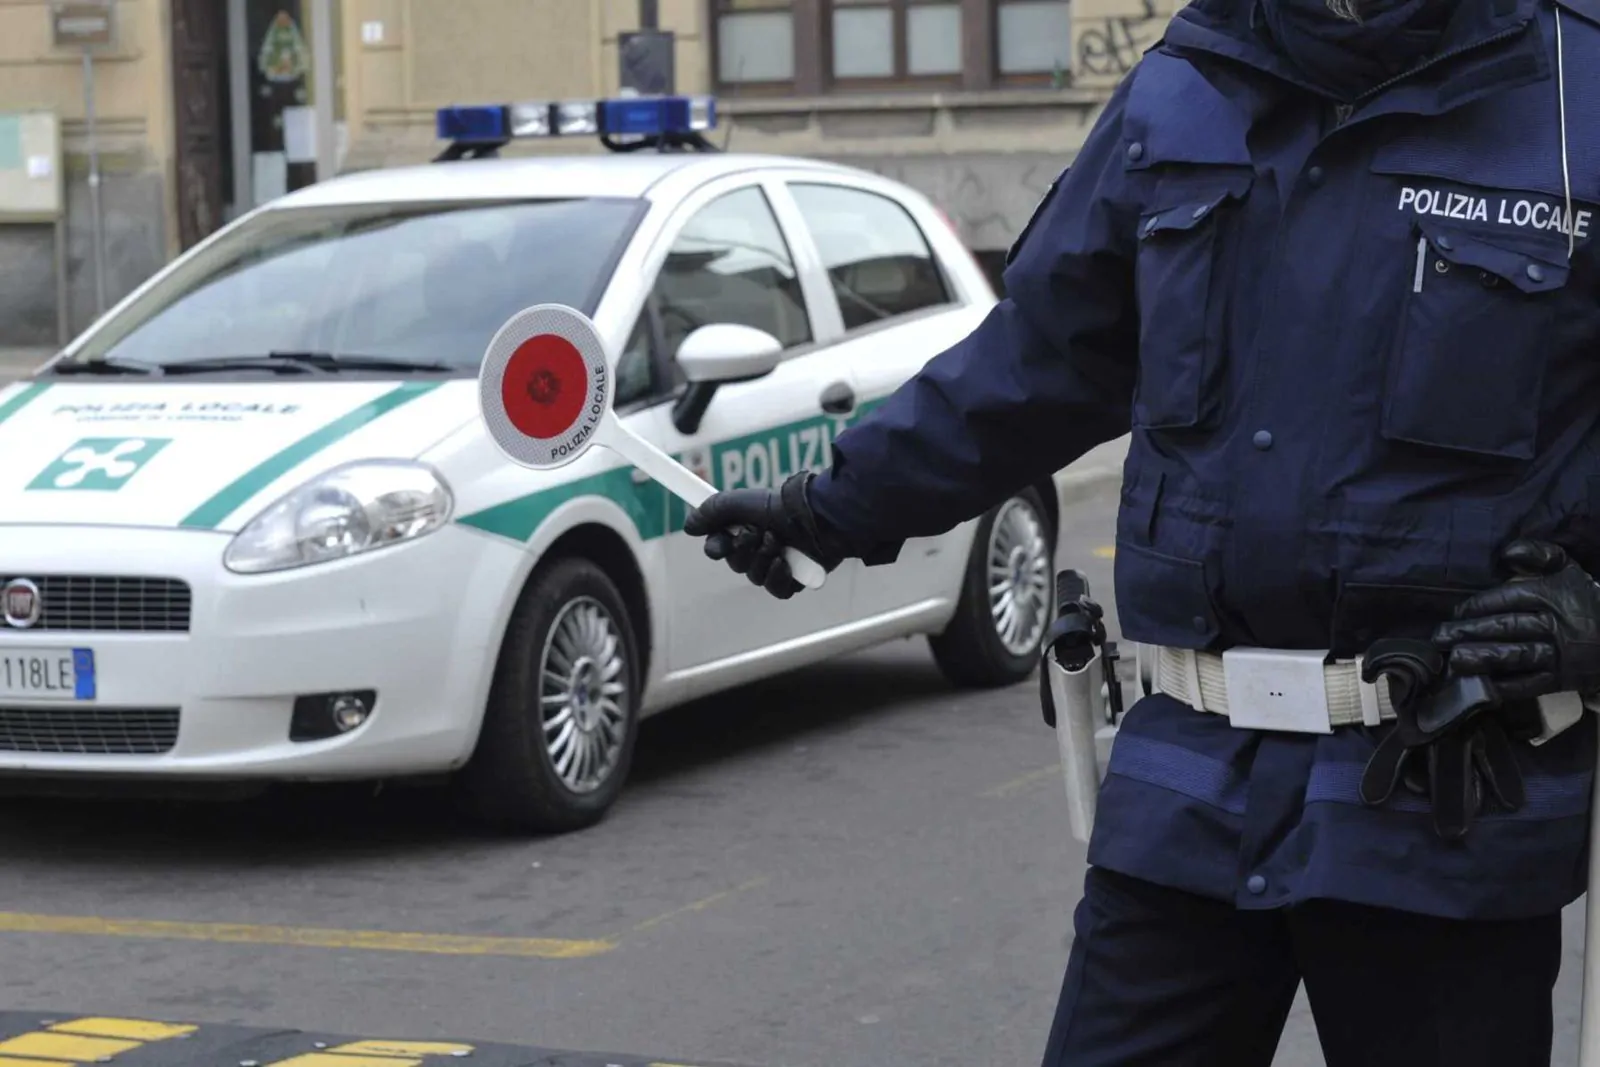 Polizia Locale di Udine: arriva la selezione pubblica per 6 agenti